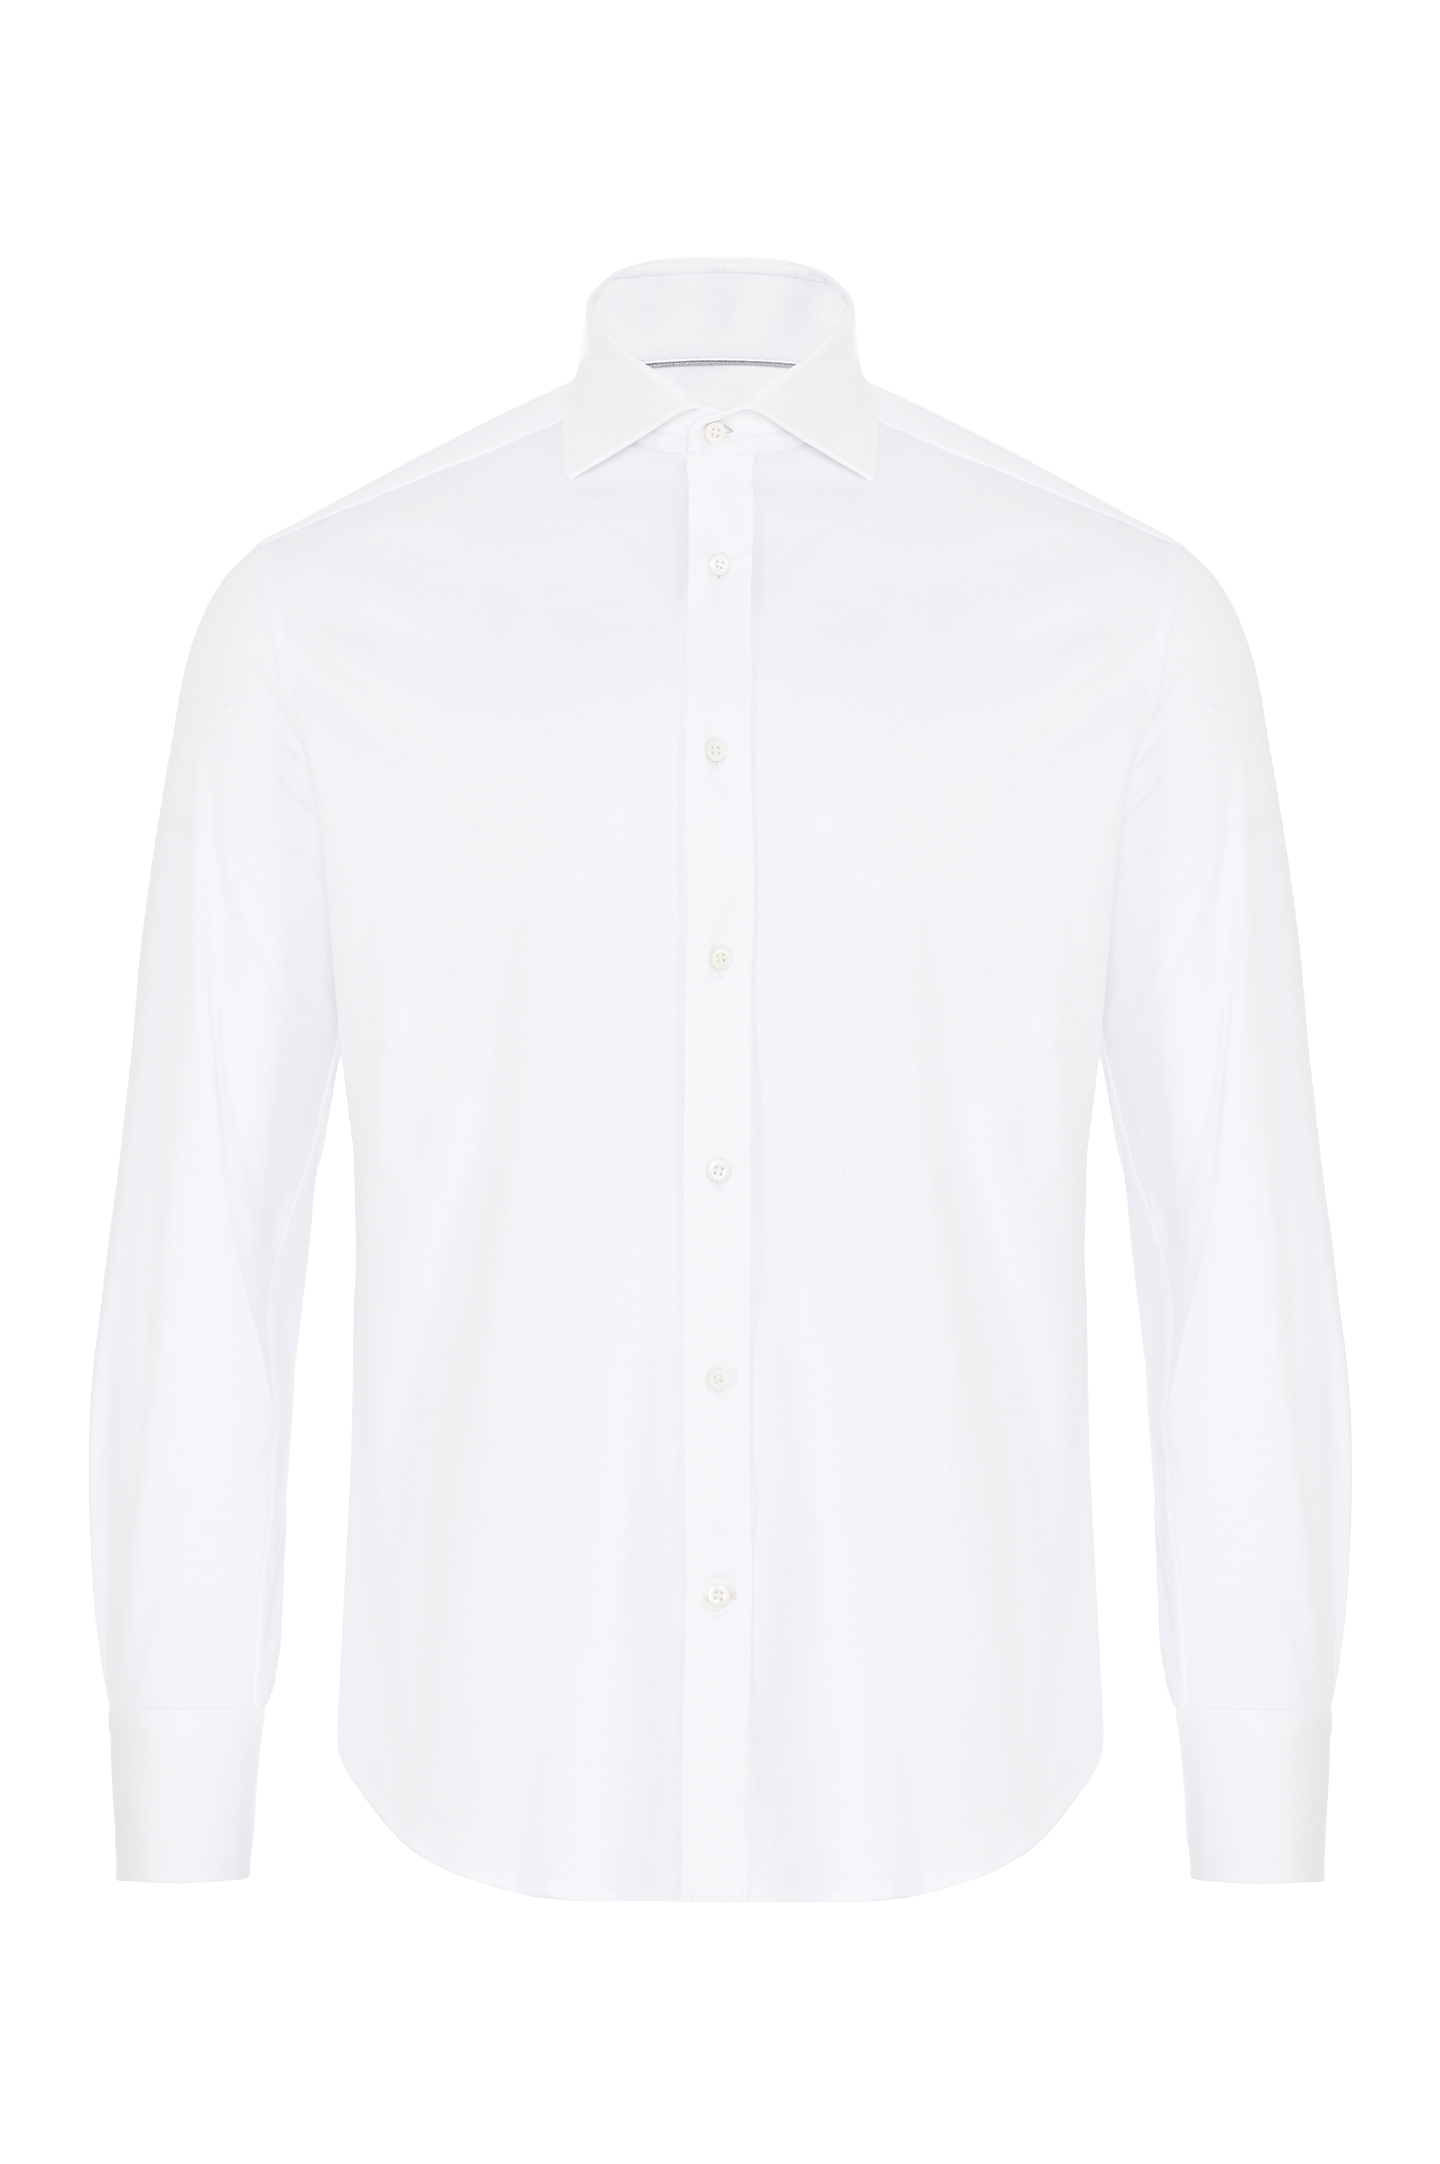 Классическая рубашка из хлопка BRUNELLO  CUCINELLI M0B136686, цвет: Белый, Мужской